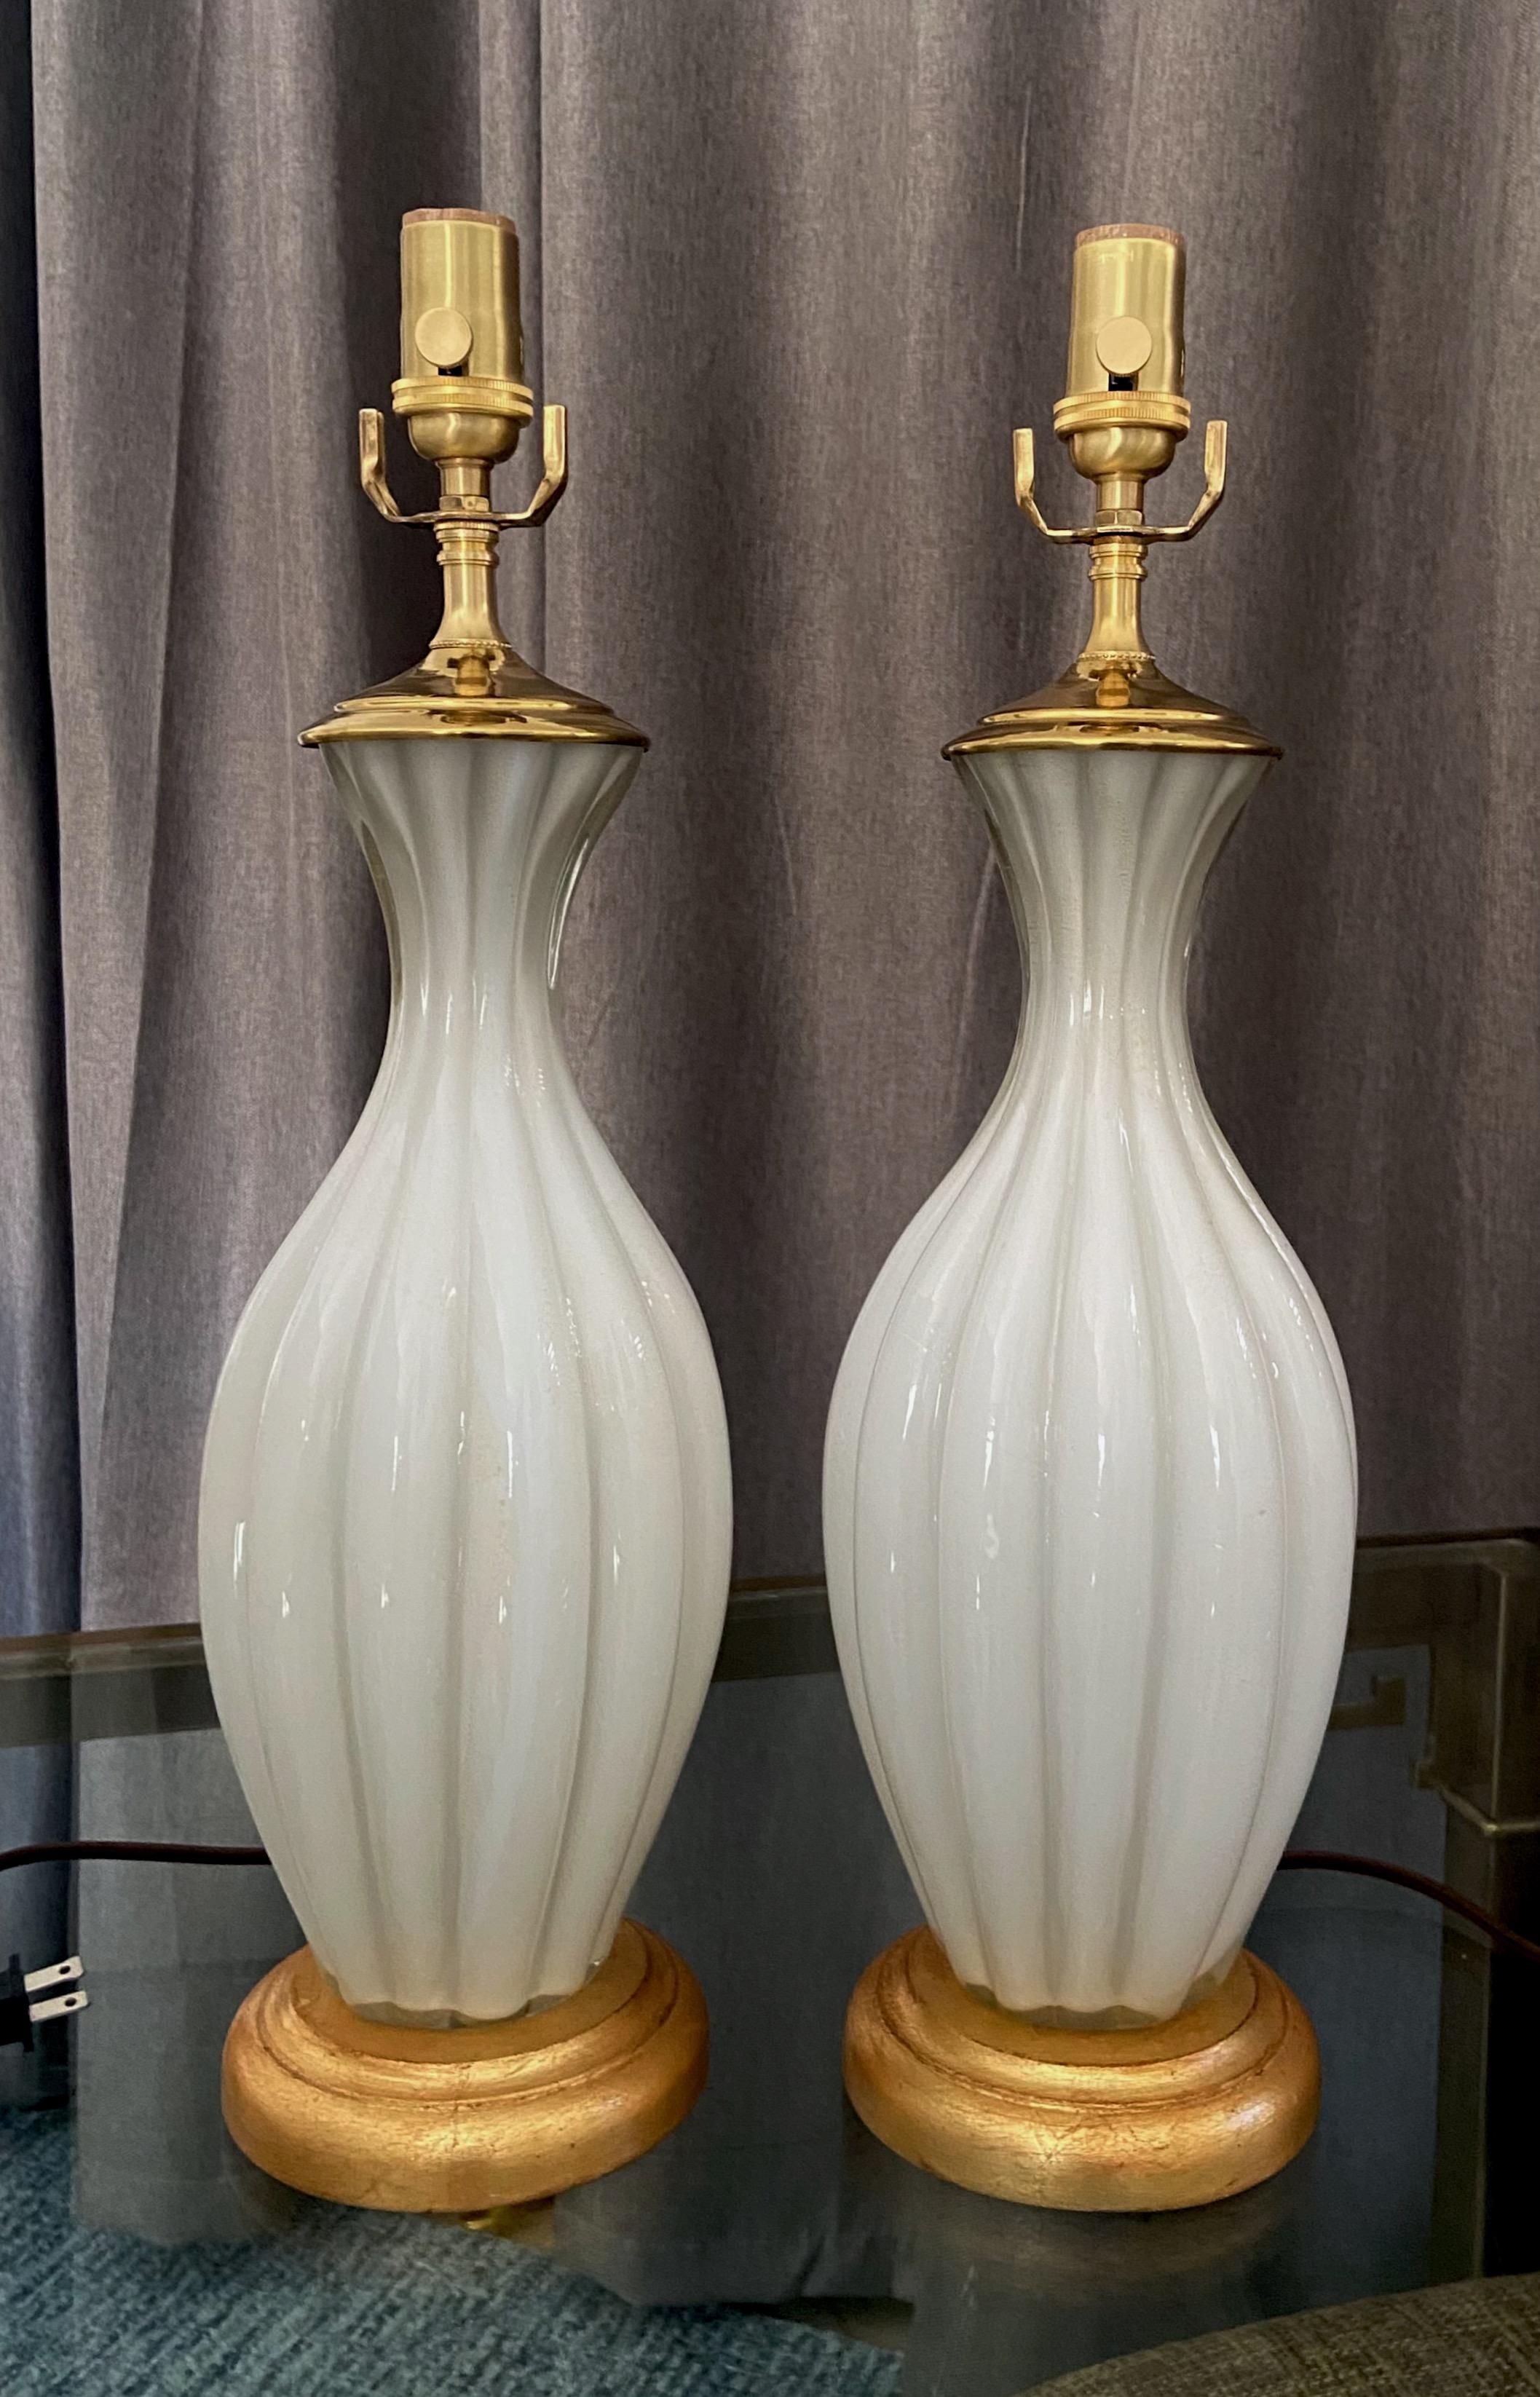 Paar italienische Murano-Lampen aus weißem Glas, gerippt, auf vergoldeten Sockeln. Das mundgeblasene Gehäuse hat subtile Goldeinschlüsse. Neu verkabelt für US mit neuen 
3-Wege-Steckdosen und mit Rayon ummantelte Kabel. 

Maße: 14